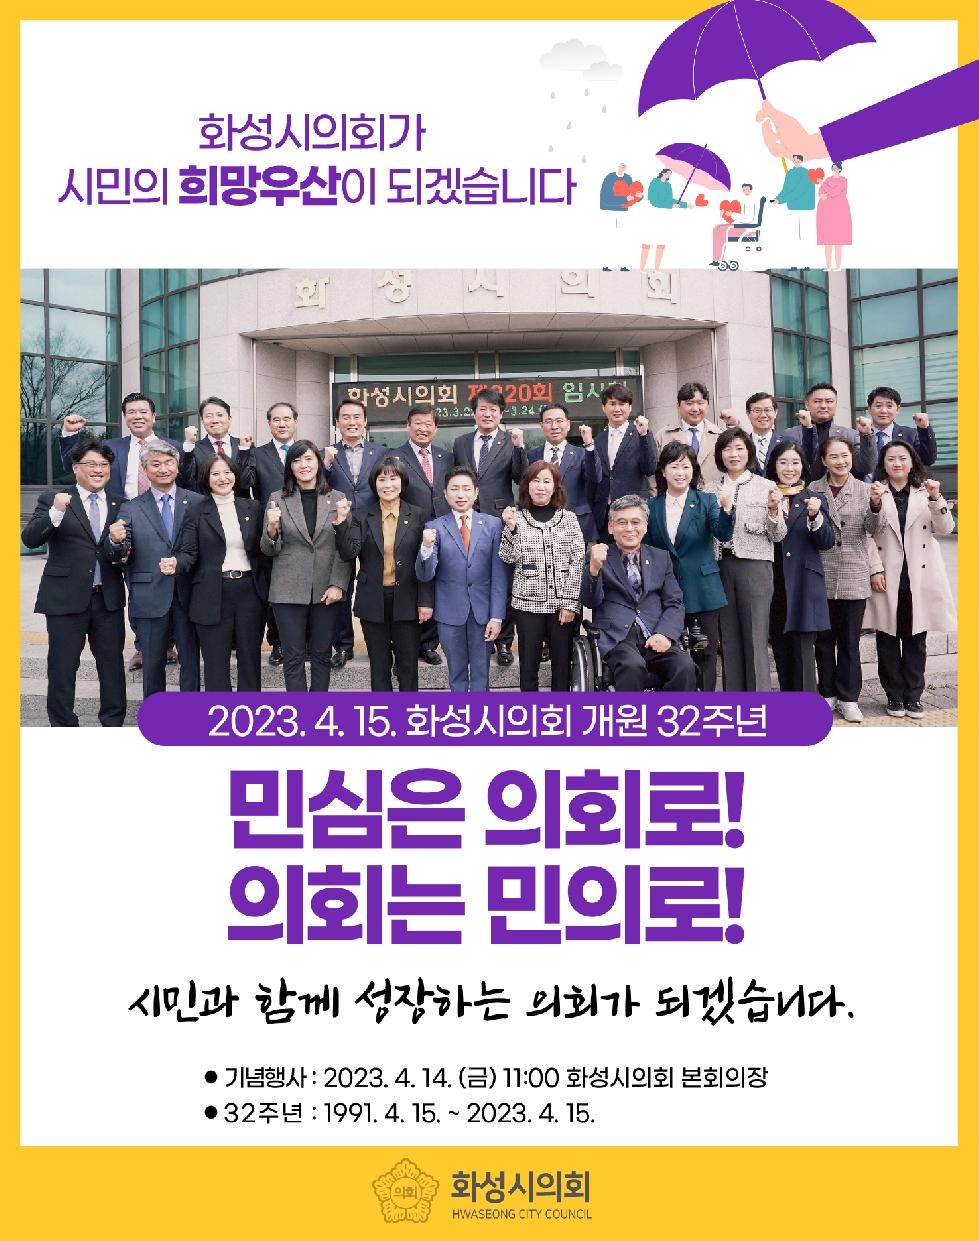 화성시의회, 지방의회 개원 32주년 기념식 개최